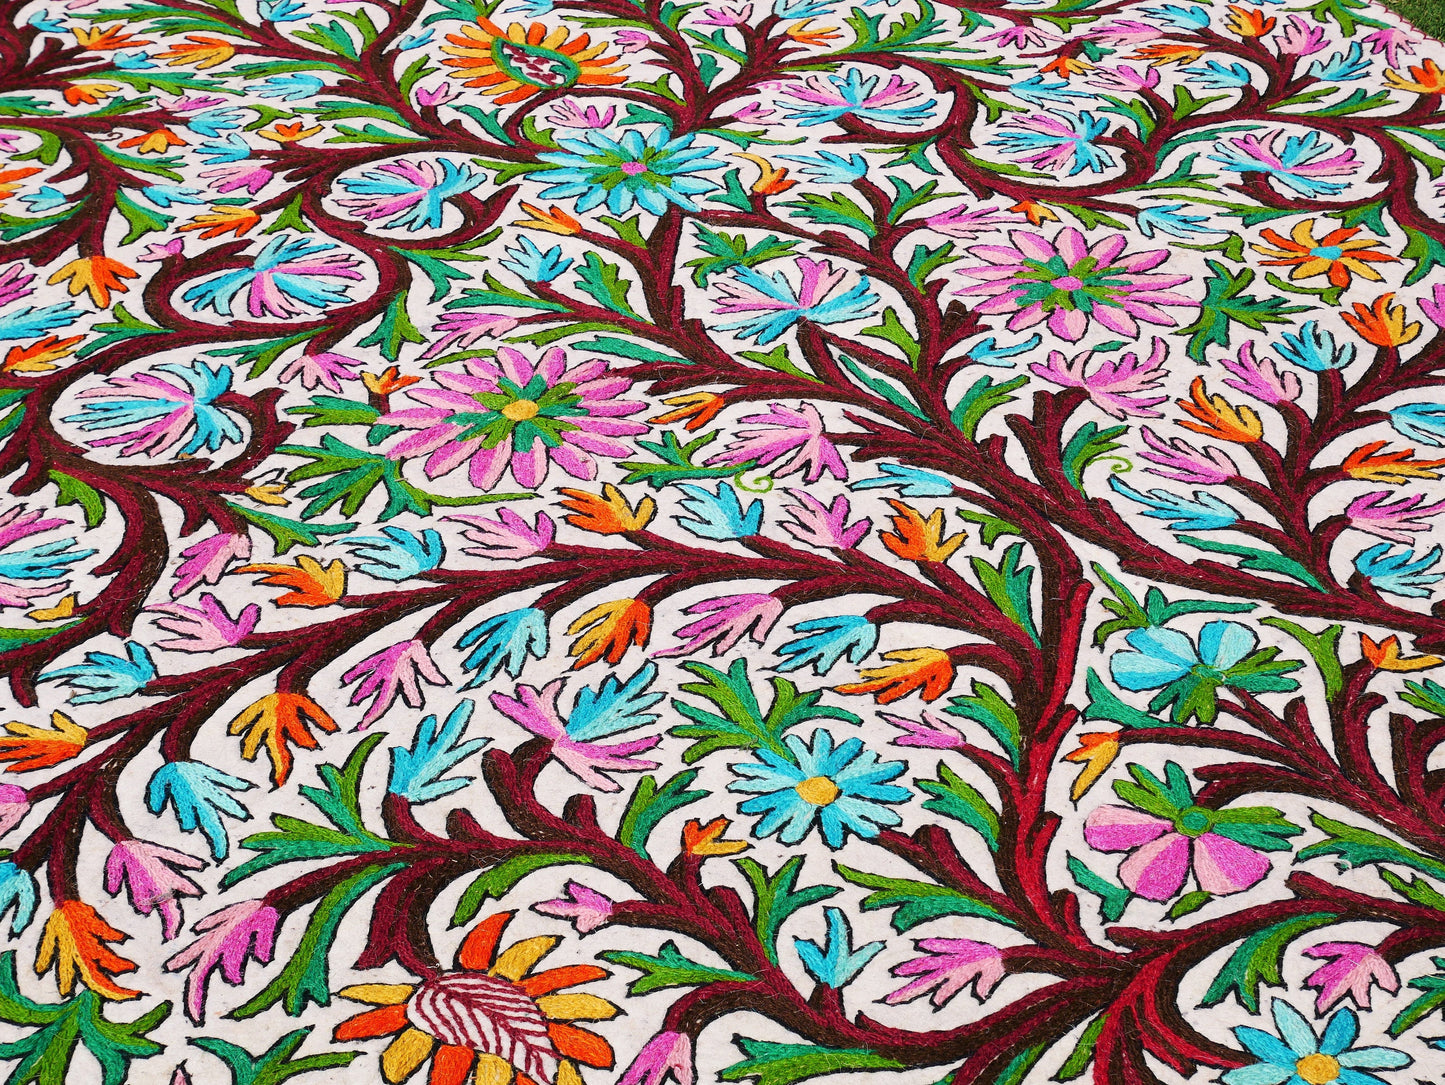 Indian wool rug hand felted Namda 6x9' | boho area rug -Kashmiri floor rug | traditional felted wool rug hand embroidery | bohemian bedroom